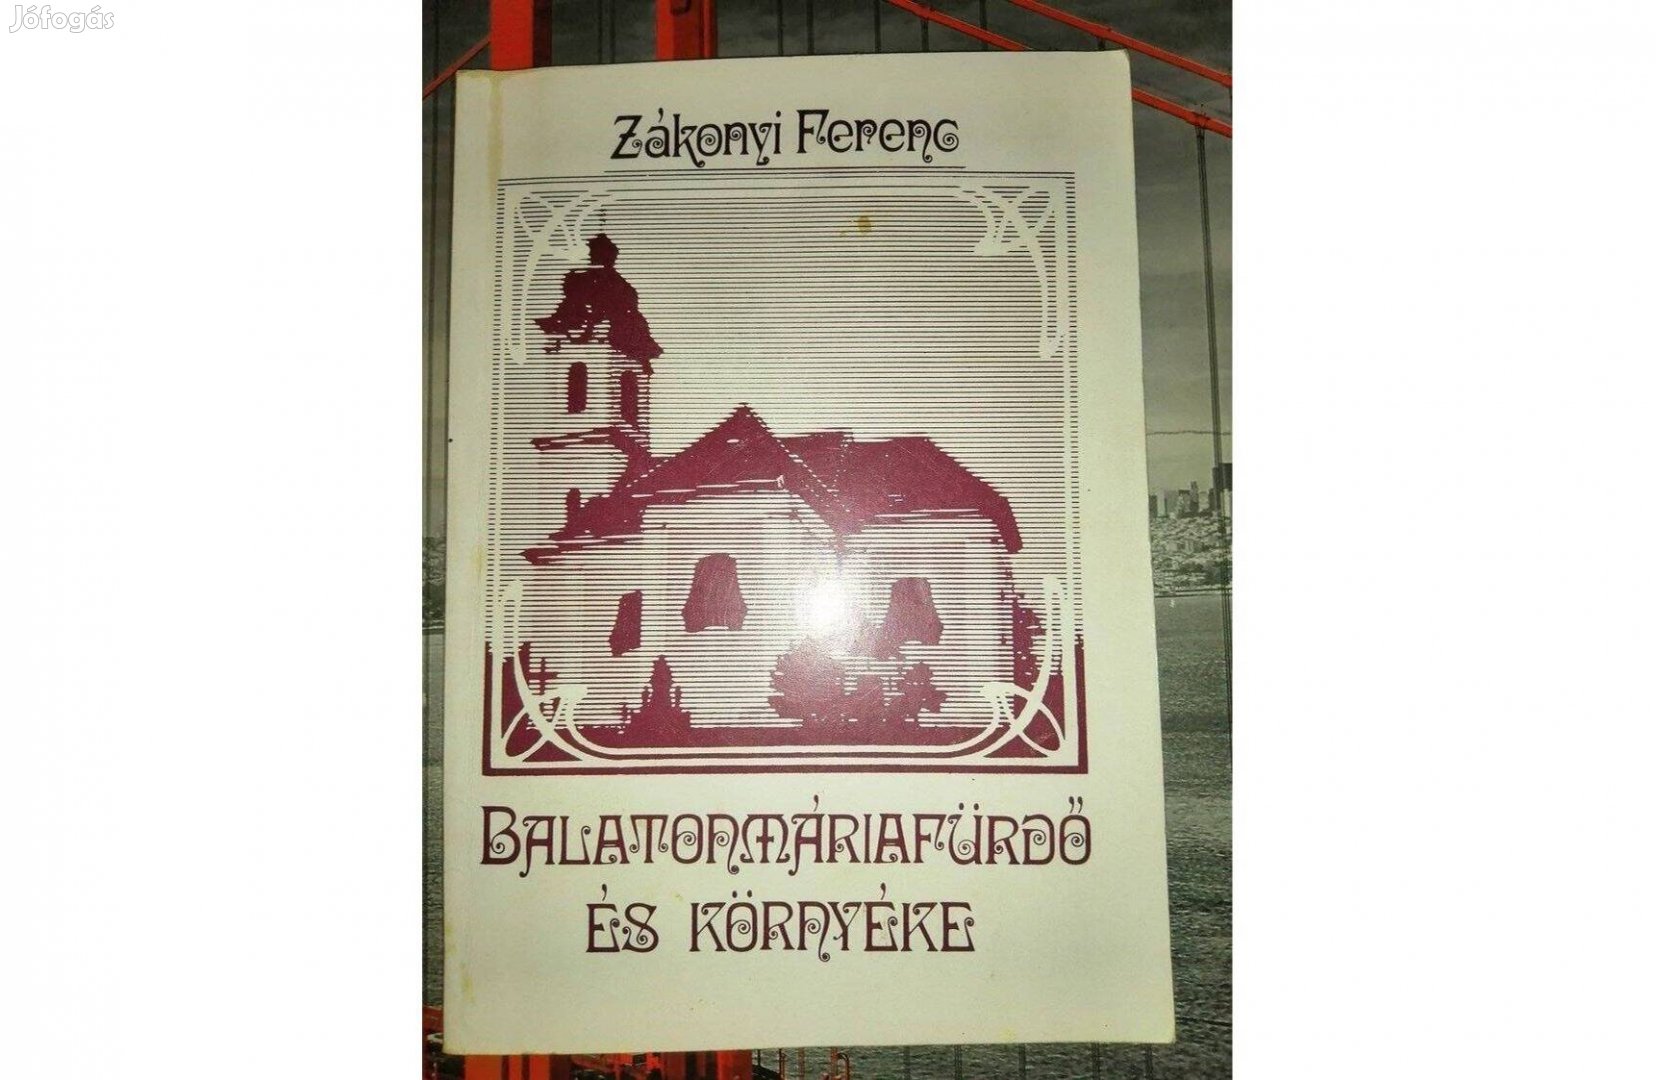 Dr. Zákonyi Ferenc: Balatonmáriafürdő és környéke